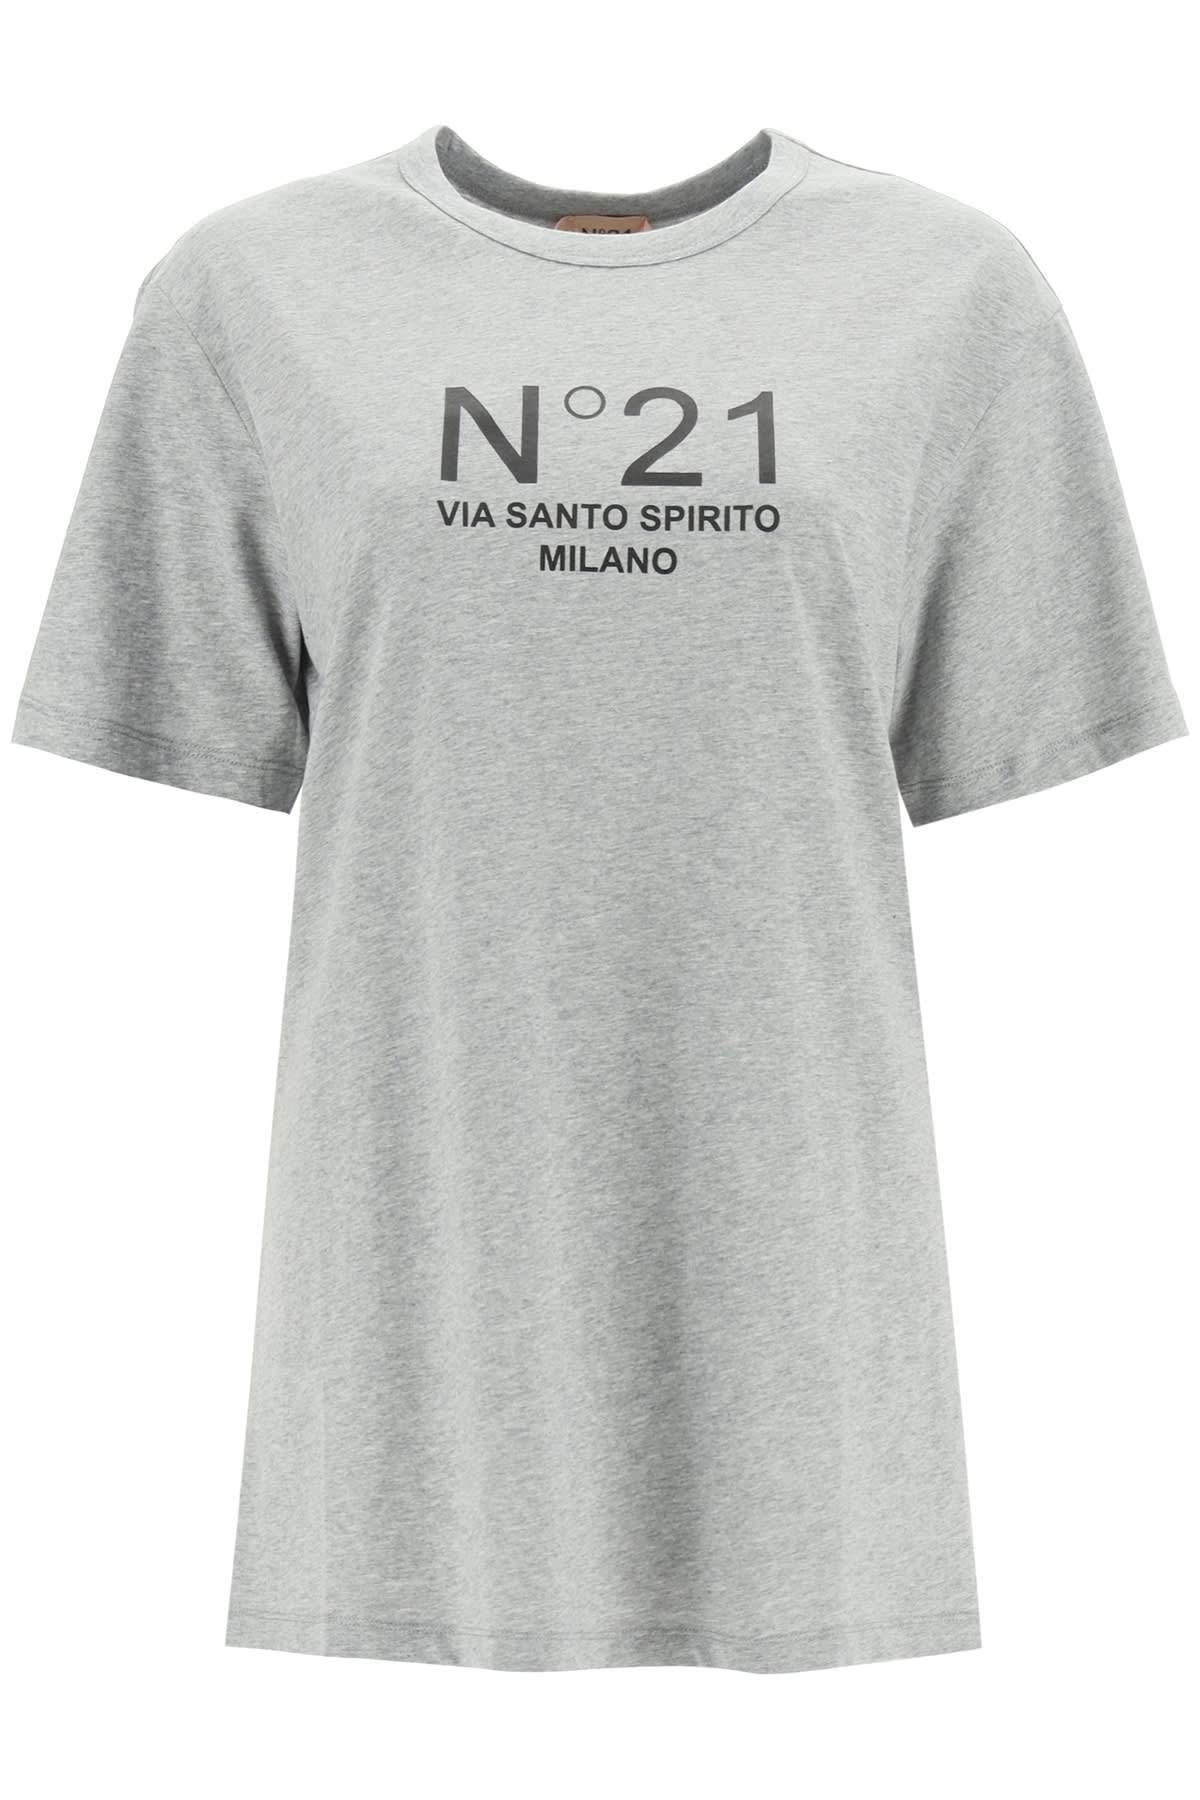 N.21 Via Santo Spirito Milano Logo T-shirt